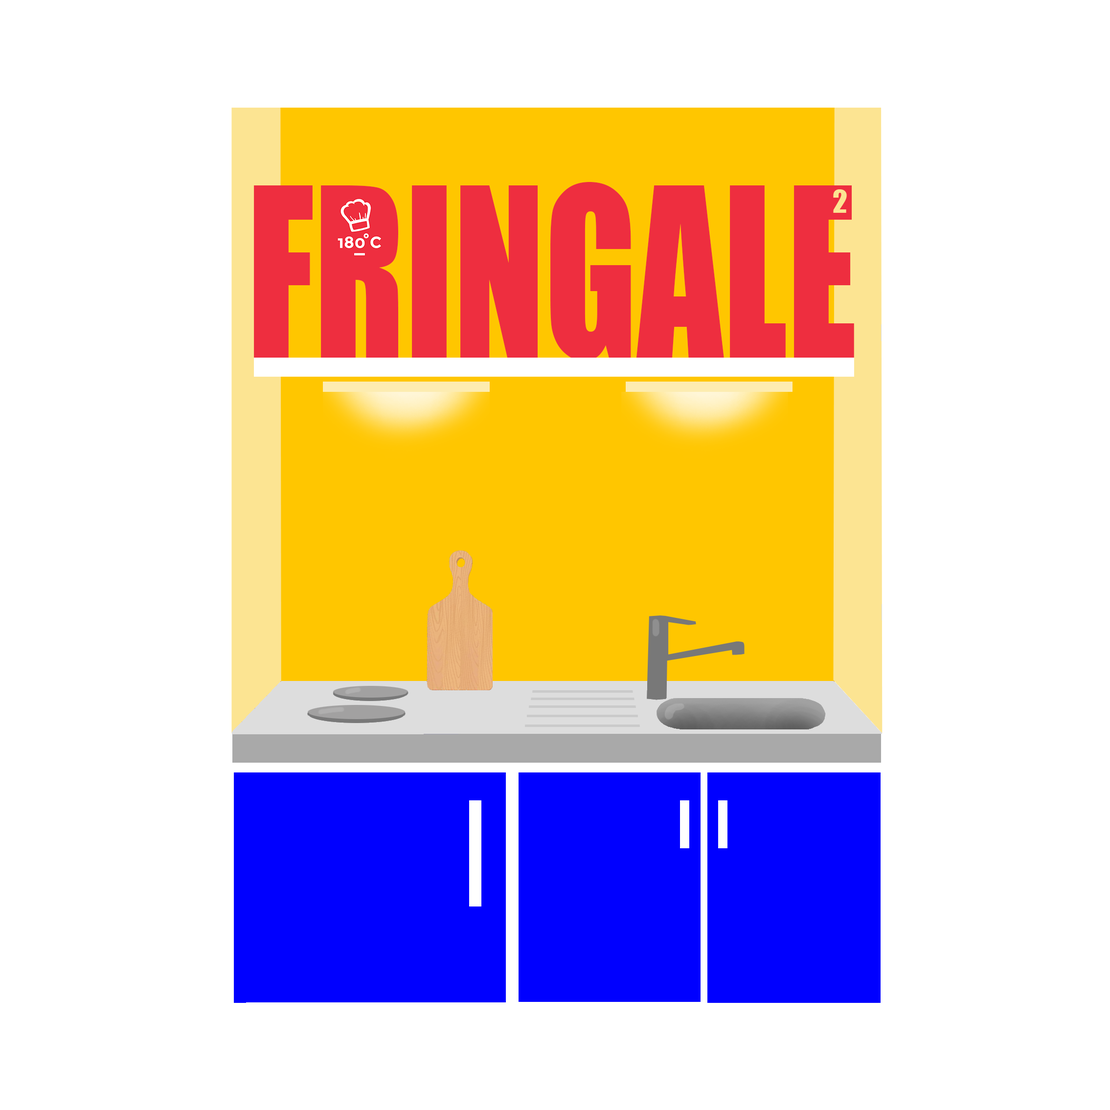 Fringale²